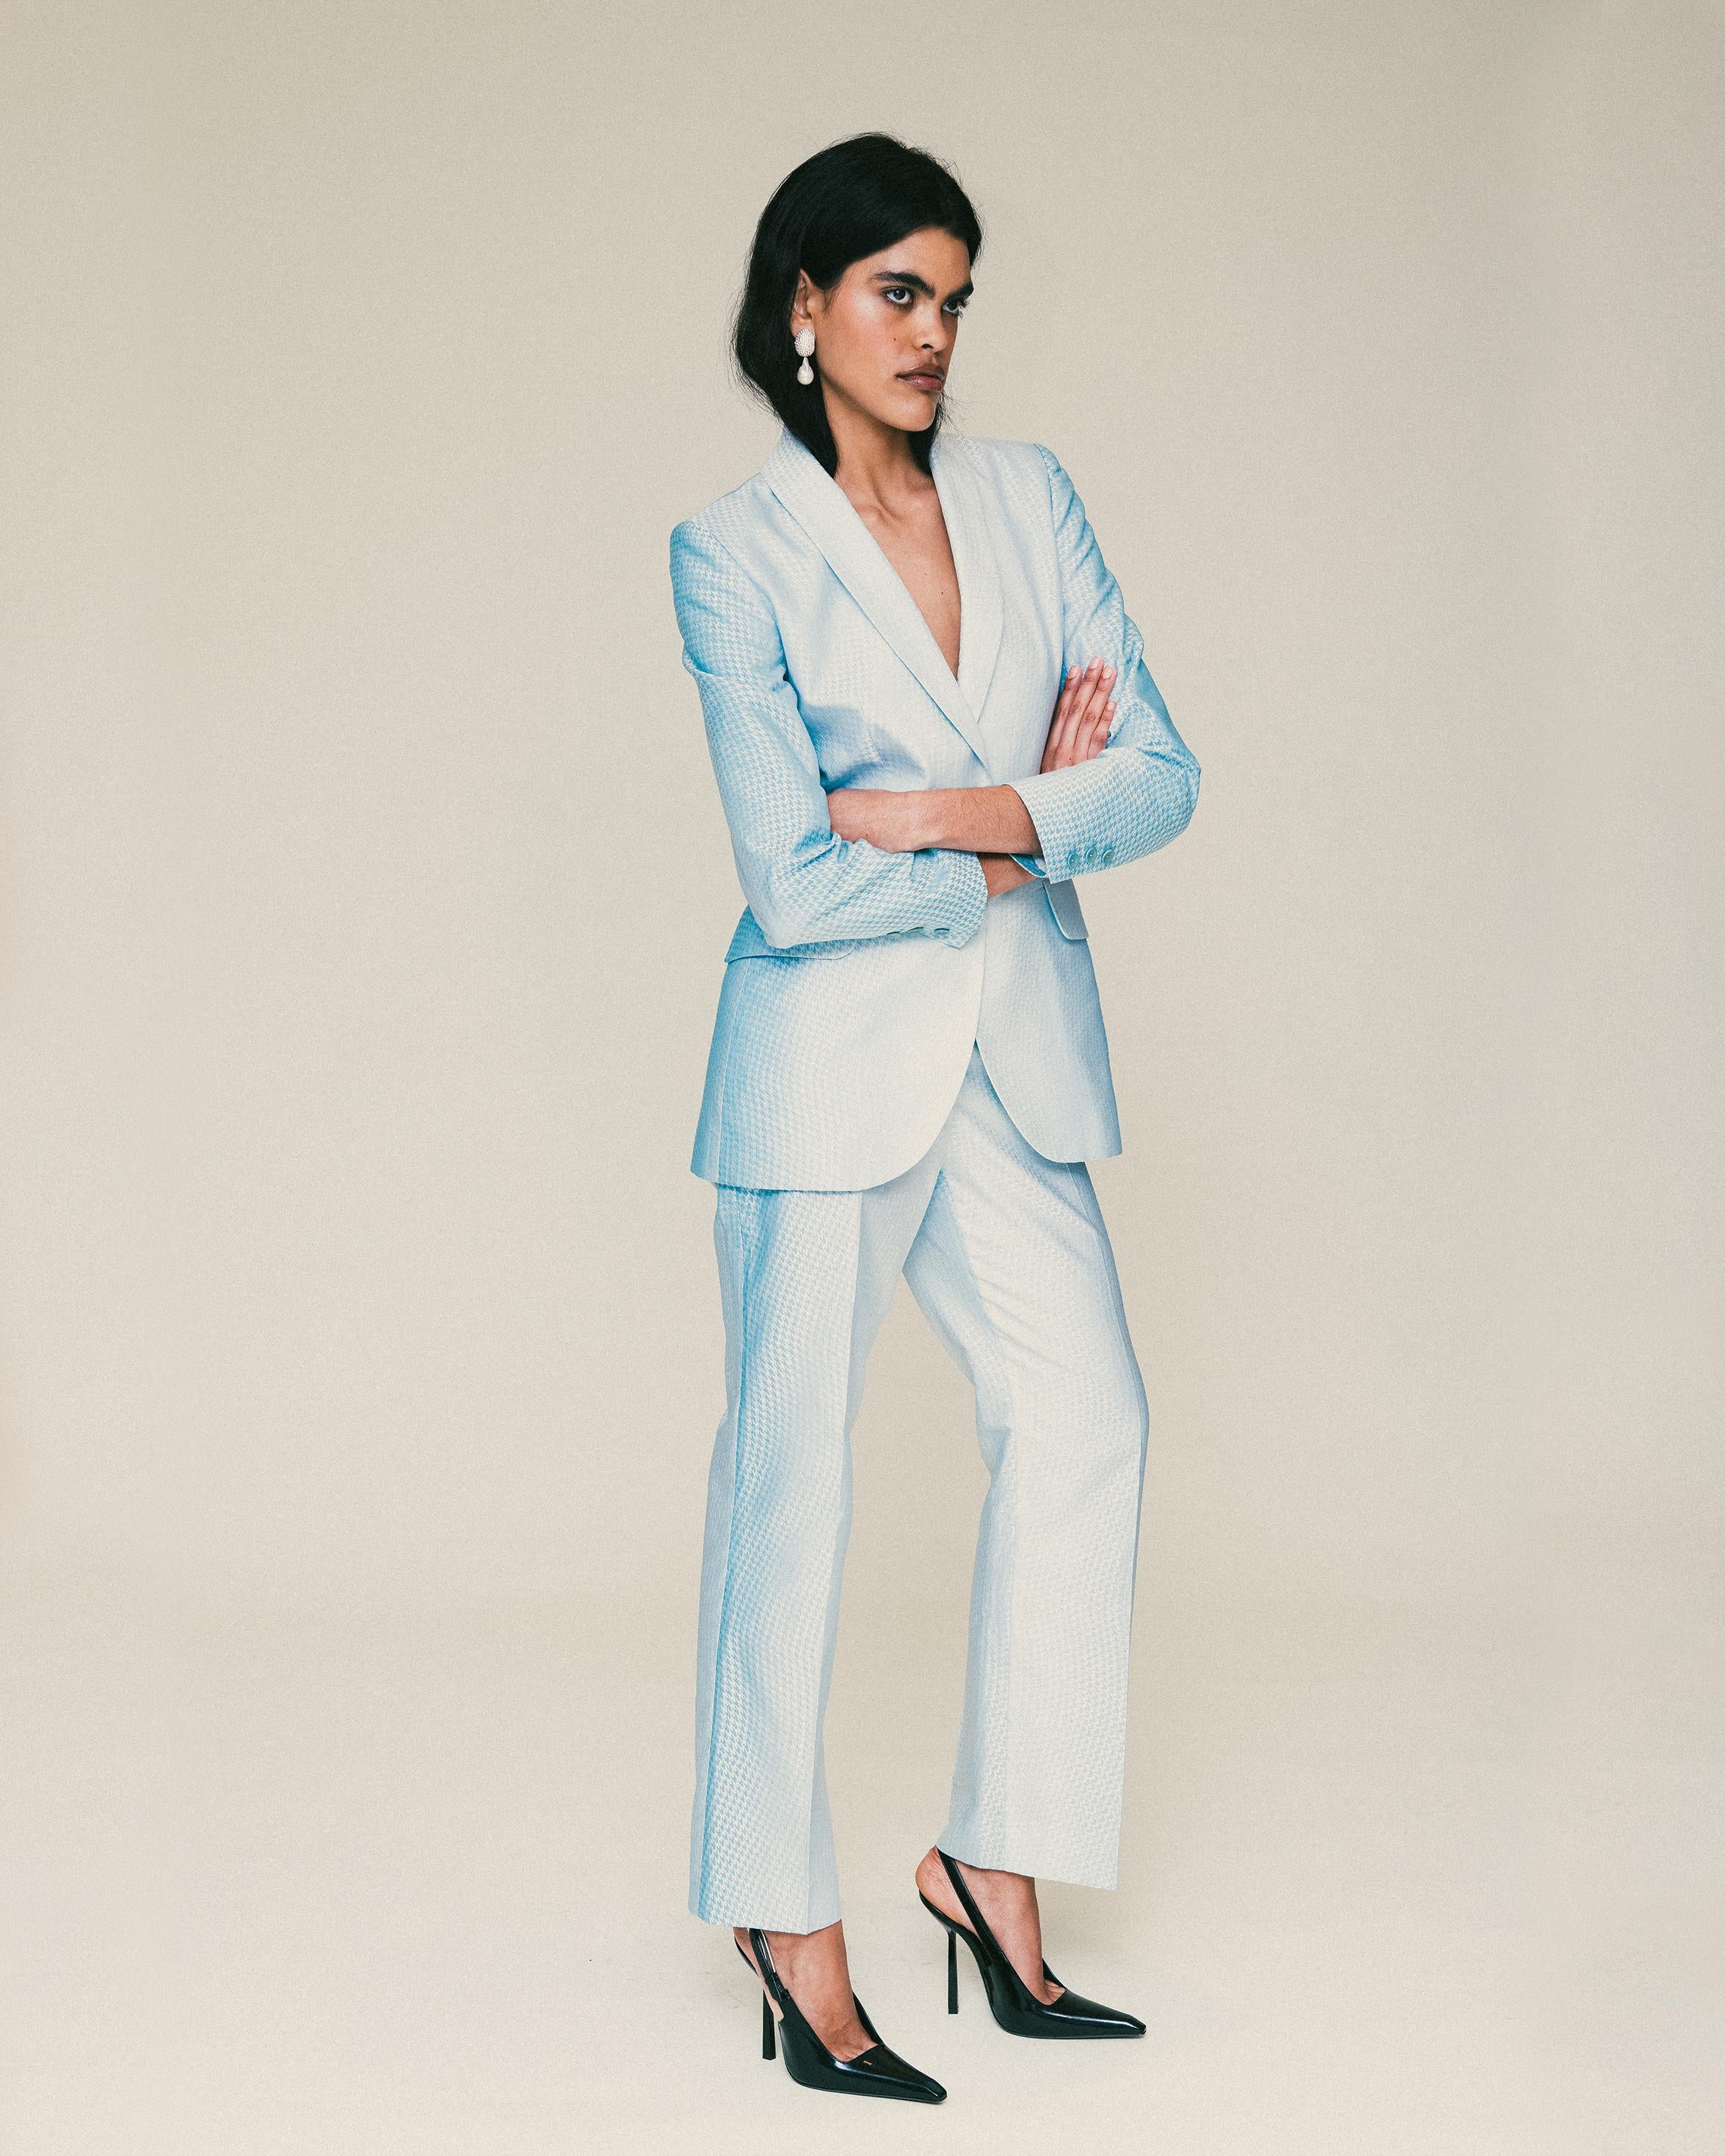 S/S 1999 Givenchy by Alexander McQueen combinaison pantalon à motif micro pied de poule bleu et blanc. La veste est dotée de deux fermetures à boutons au centre du devant et de poches latérales à rabat fonctionnelles, avec une doublure intérieure